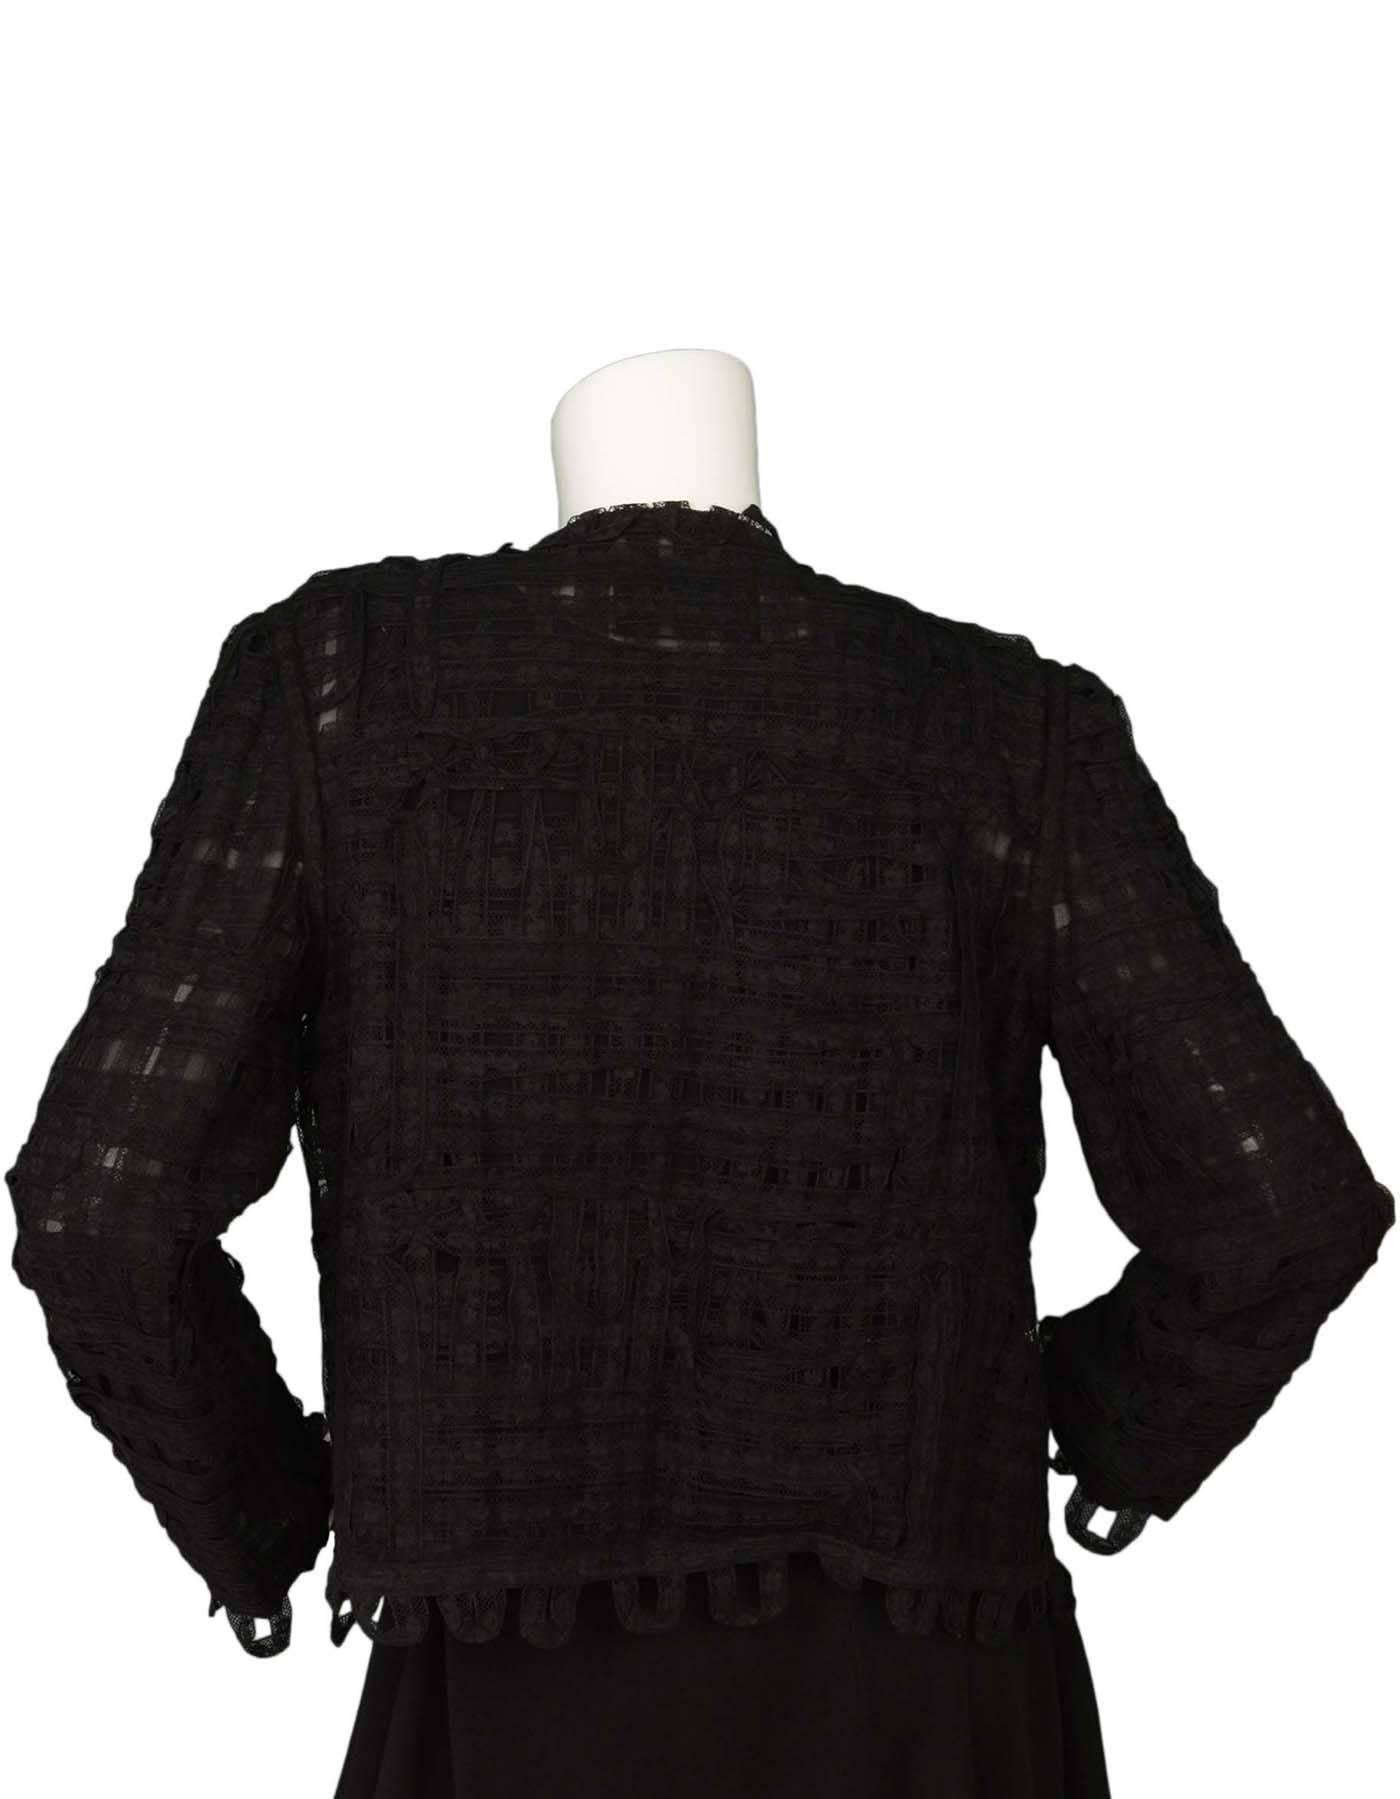 CHANEL Black Lace Open Front Jacket sz M 1